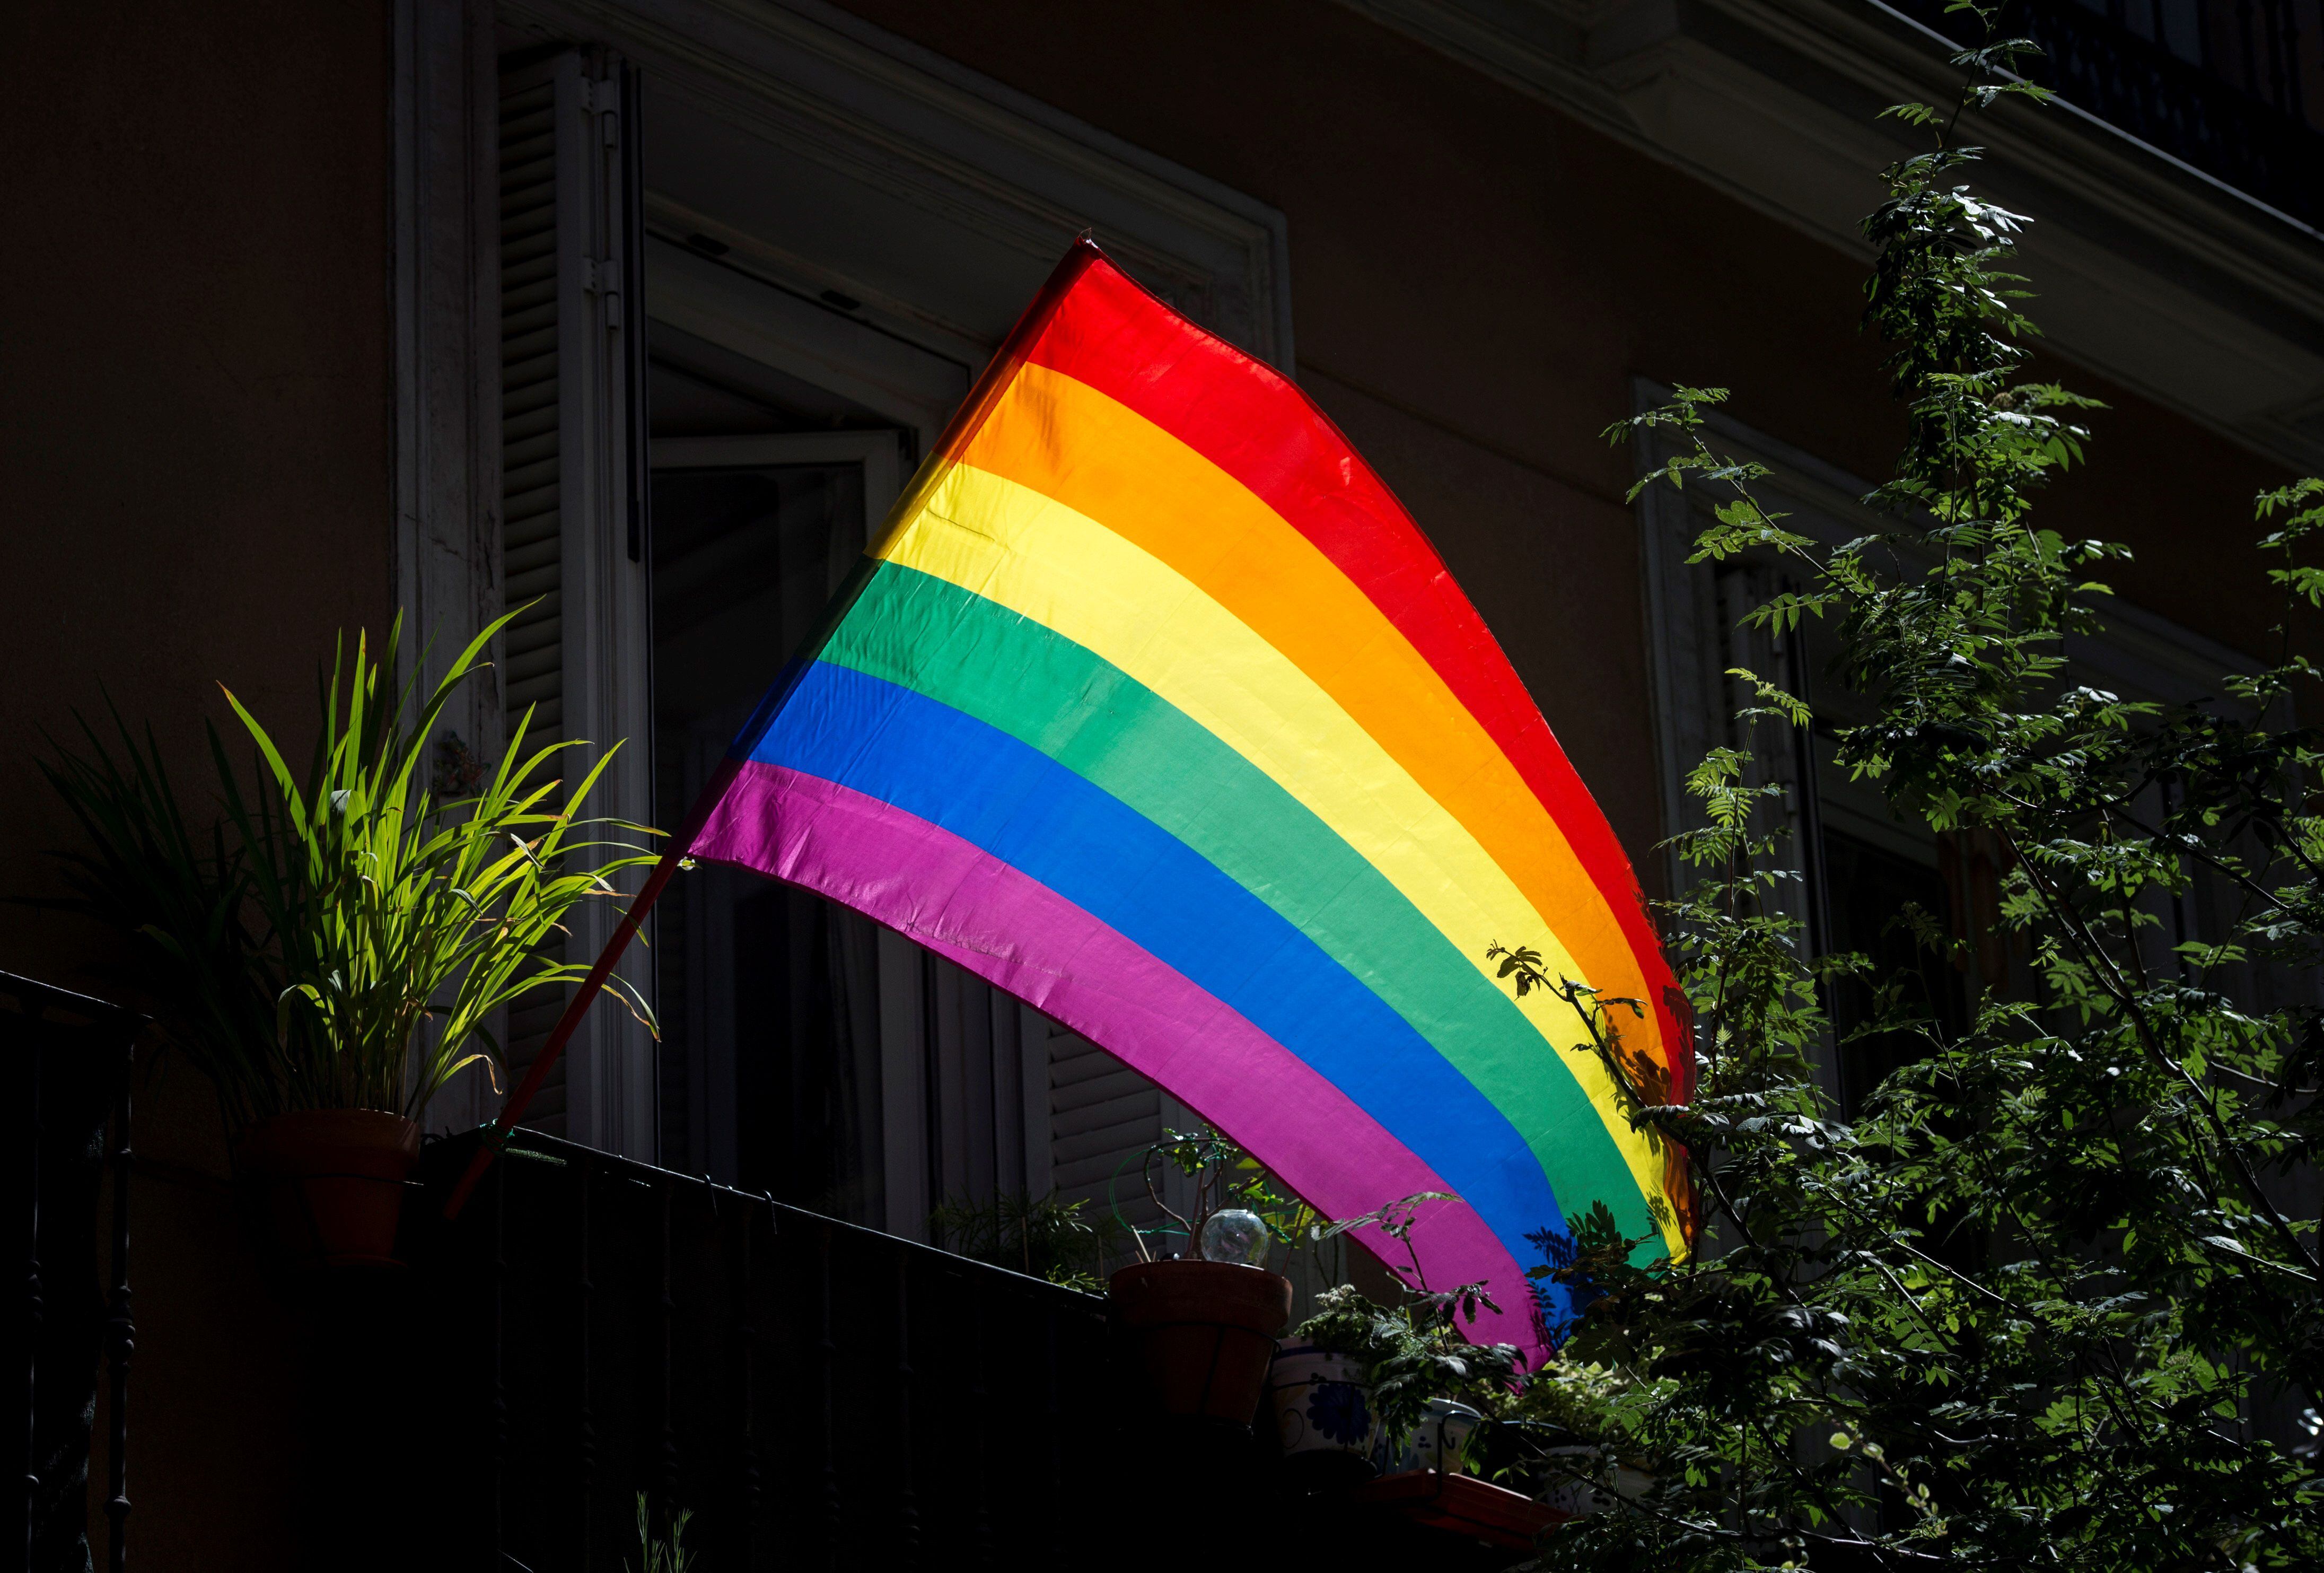 Ambiente en el barrio de Chueca, en Madrid, en las semanas previas al Día del Orgullo LGTB. (EFE/Luca Piergiovanni)